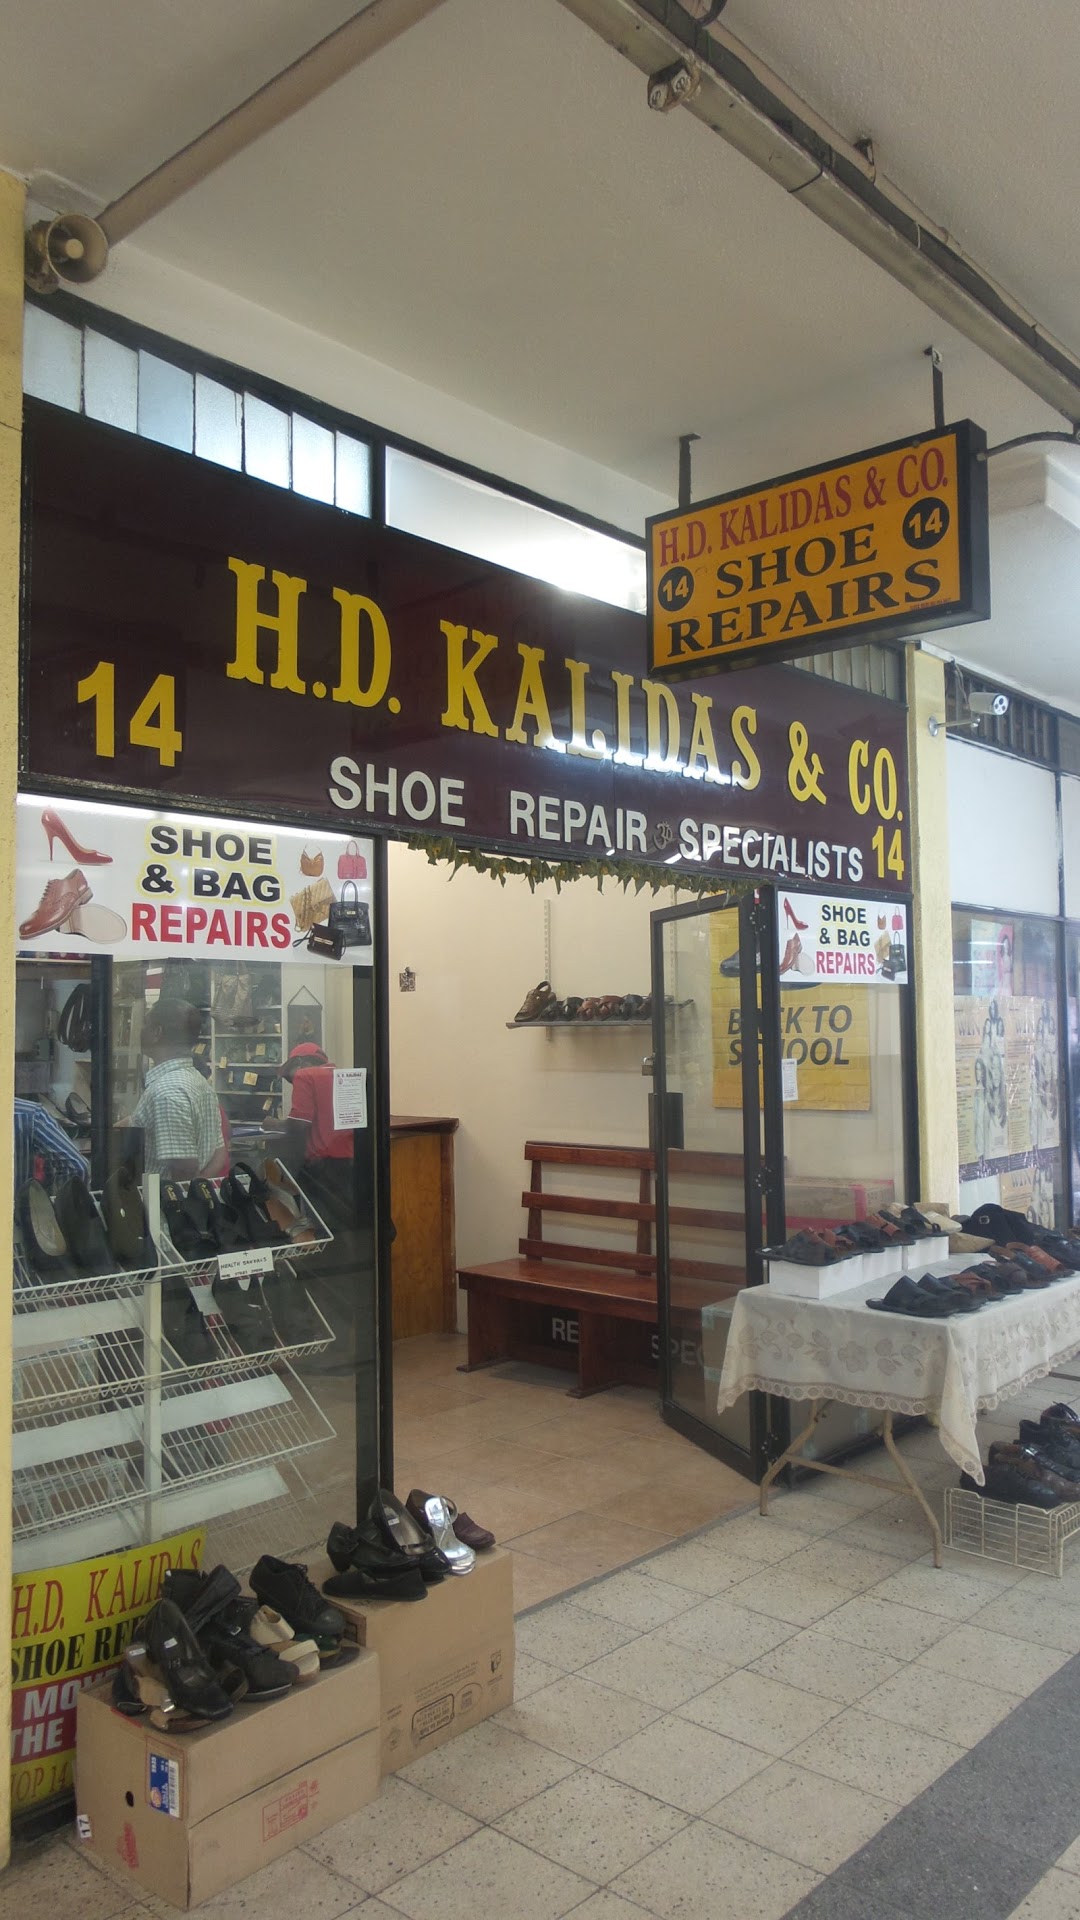 H. D. Kalidas & Co.